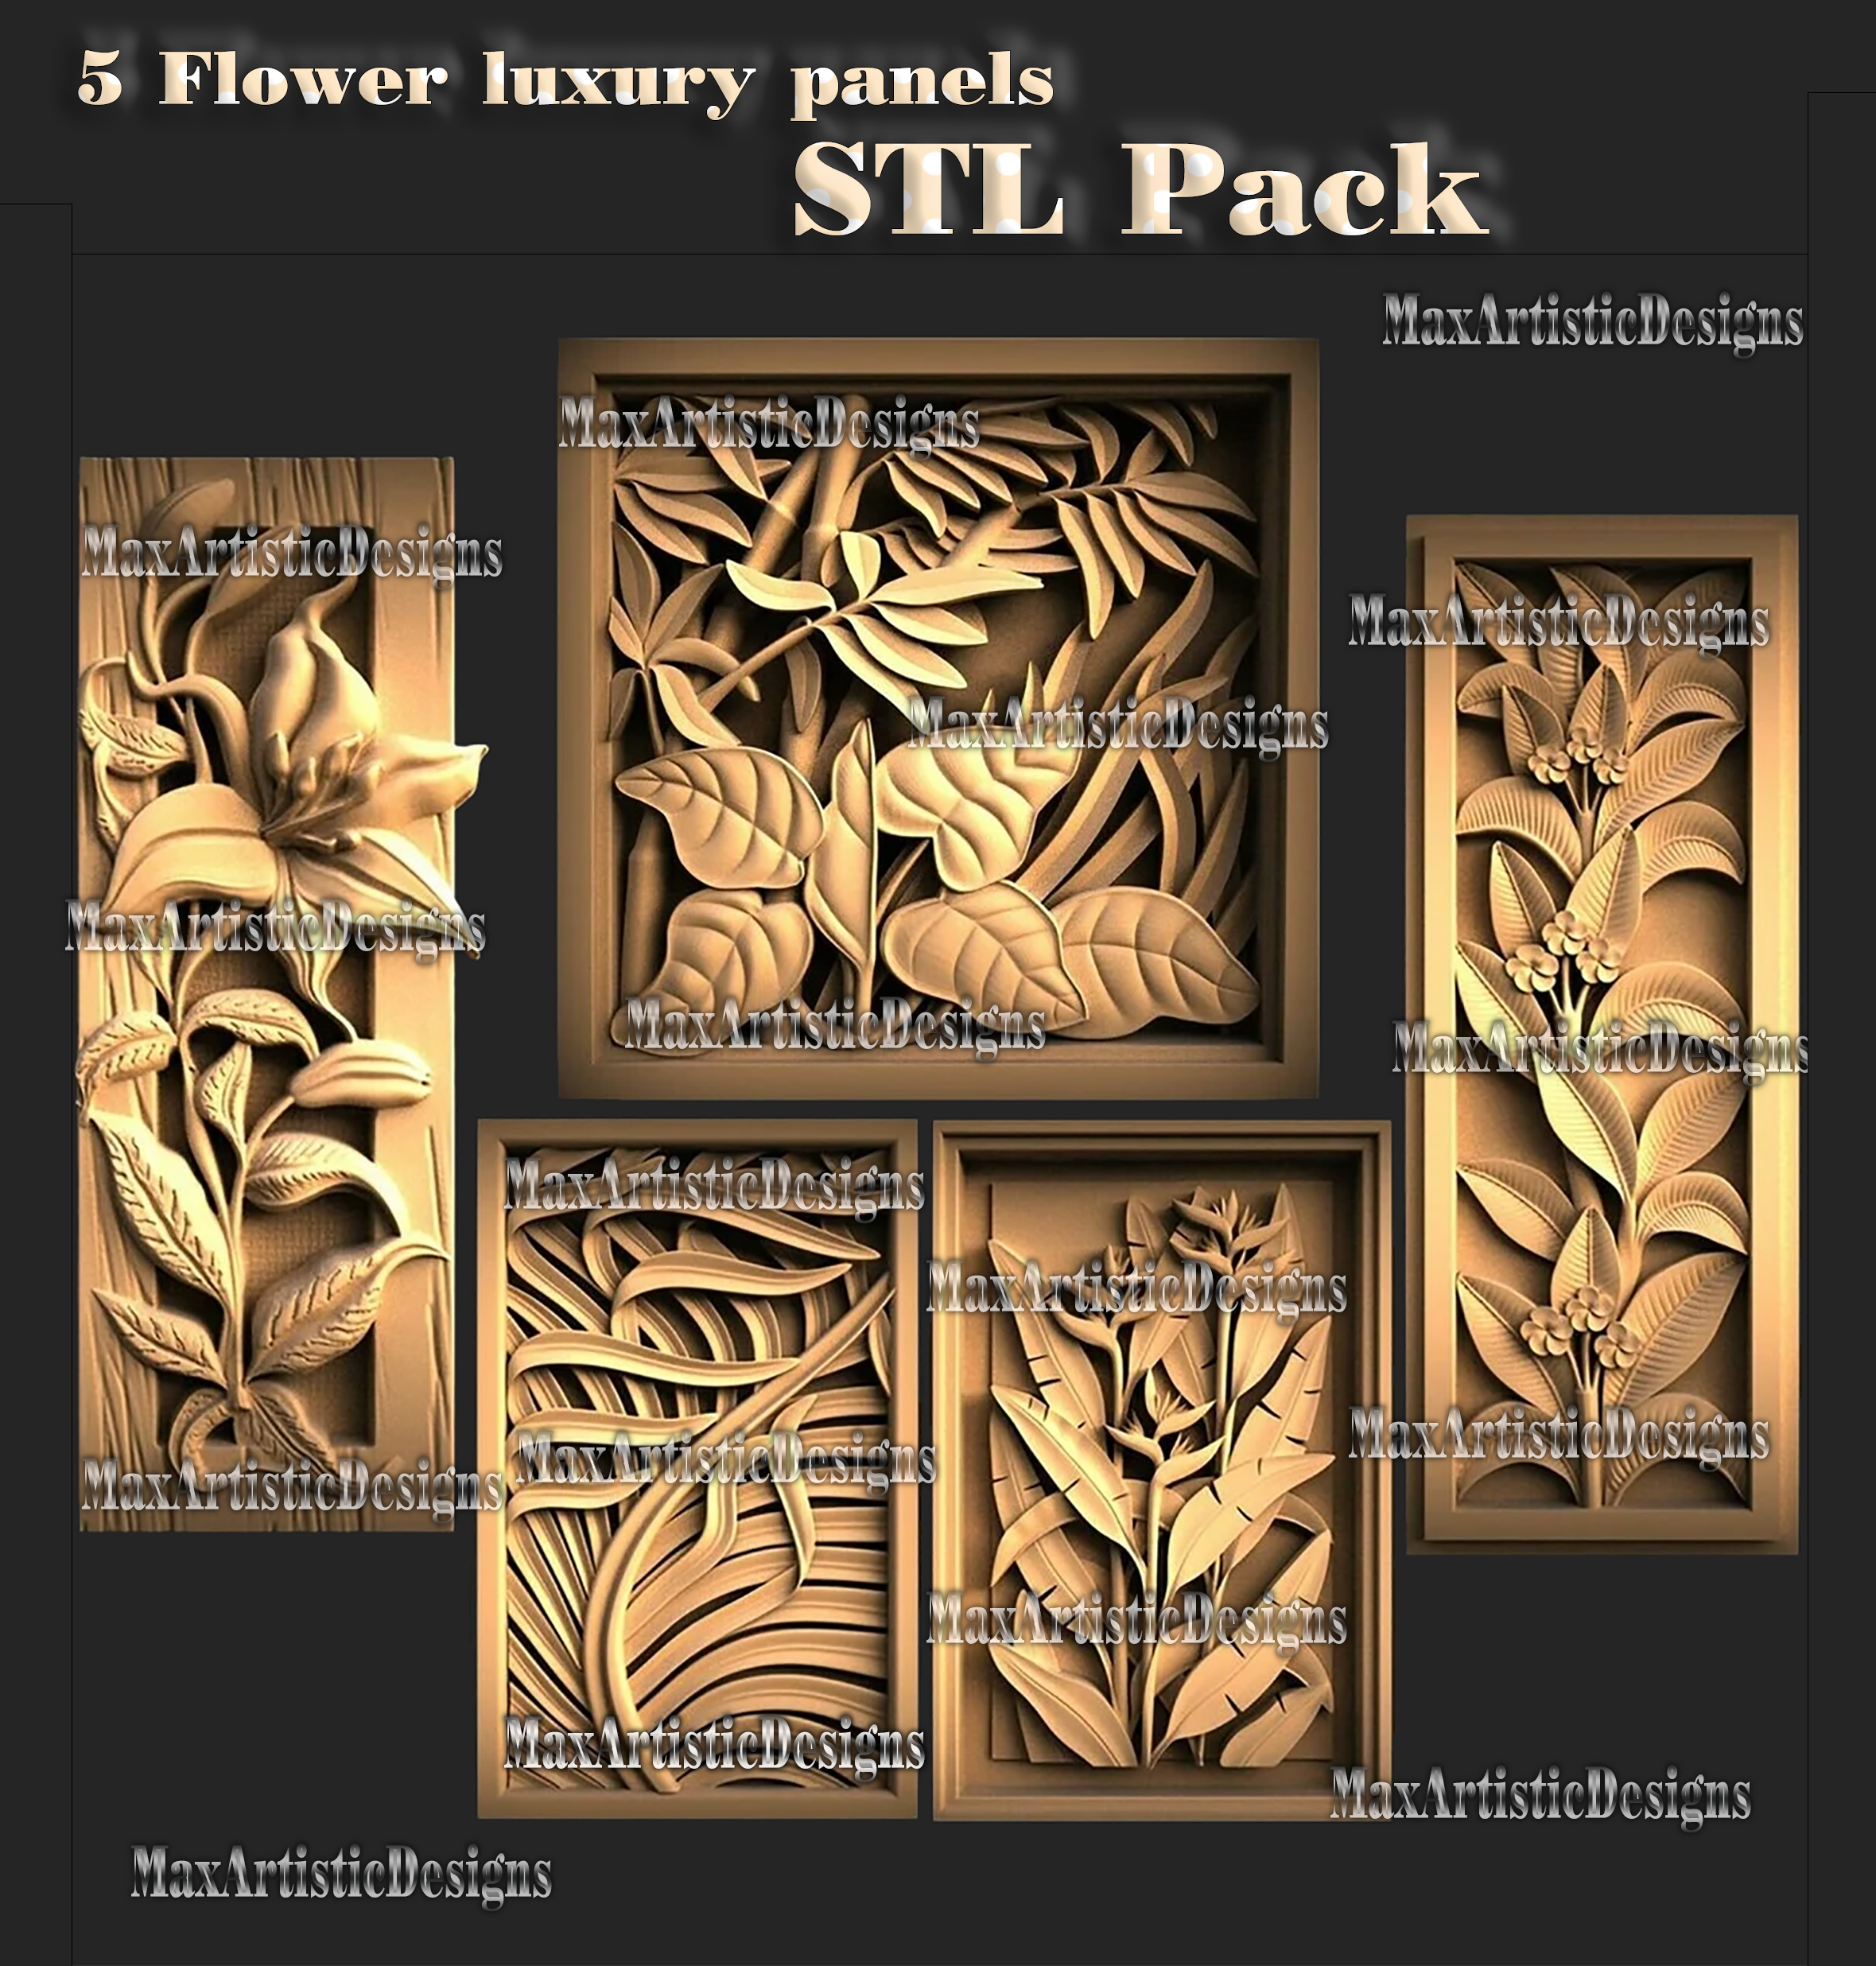 5 models flowers leaf in frame 3d stl model for cnc router 3d printer plant decor designs digital download